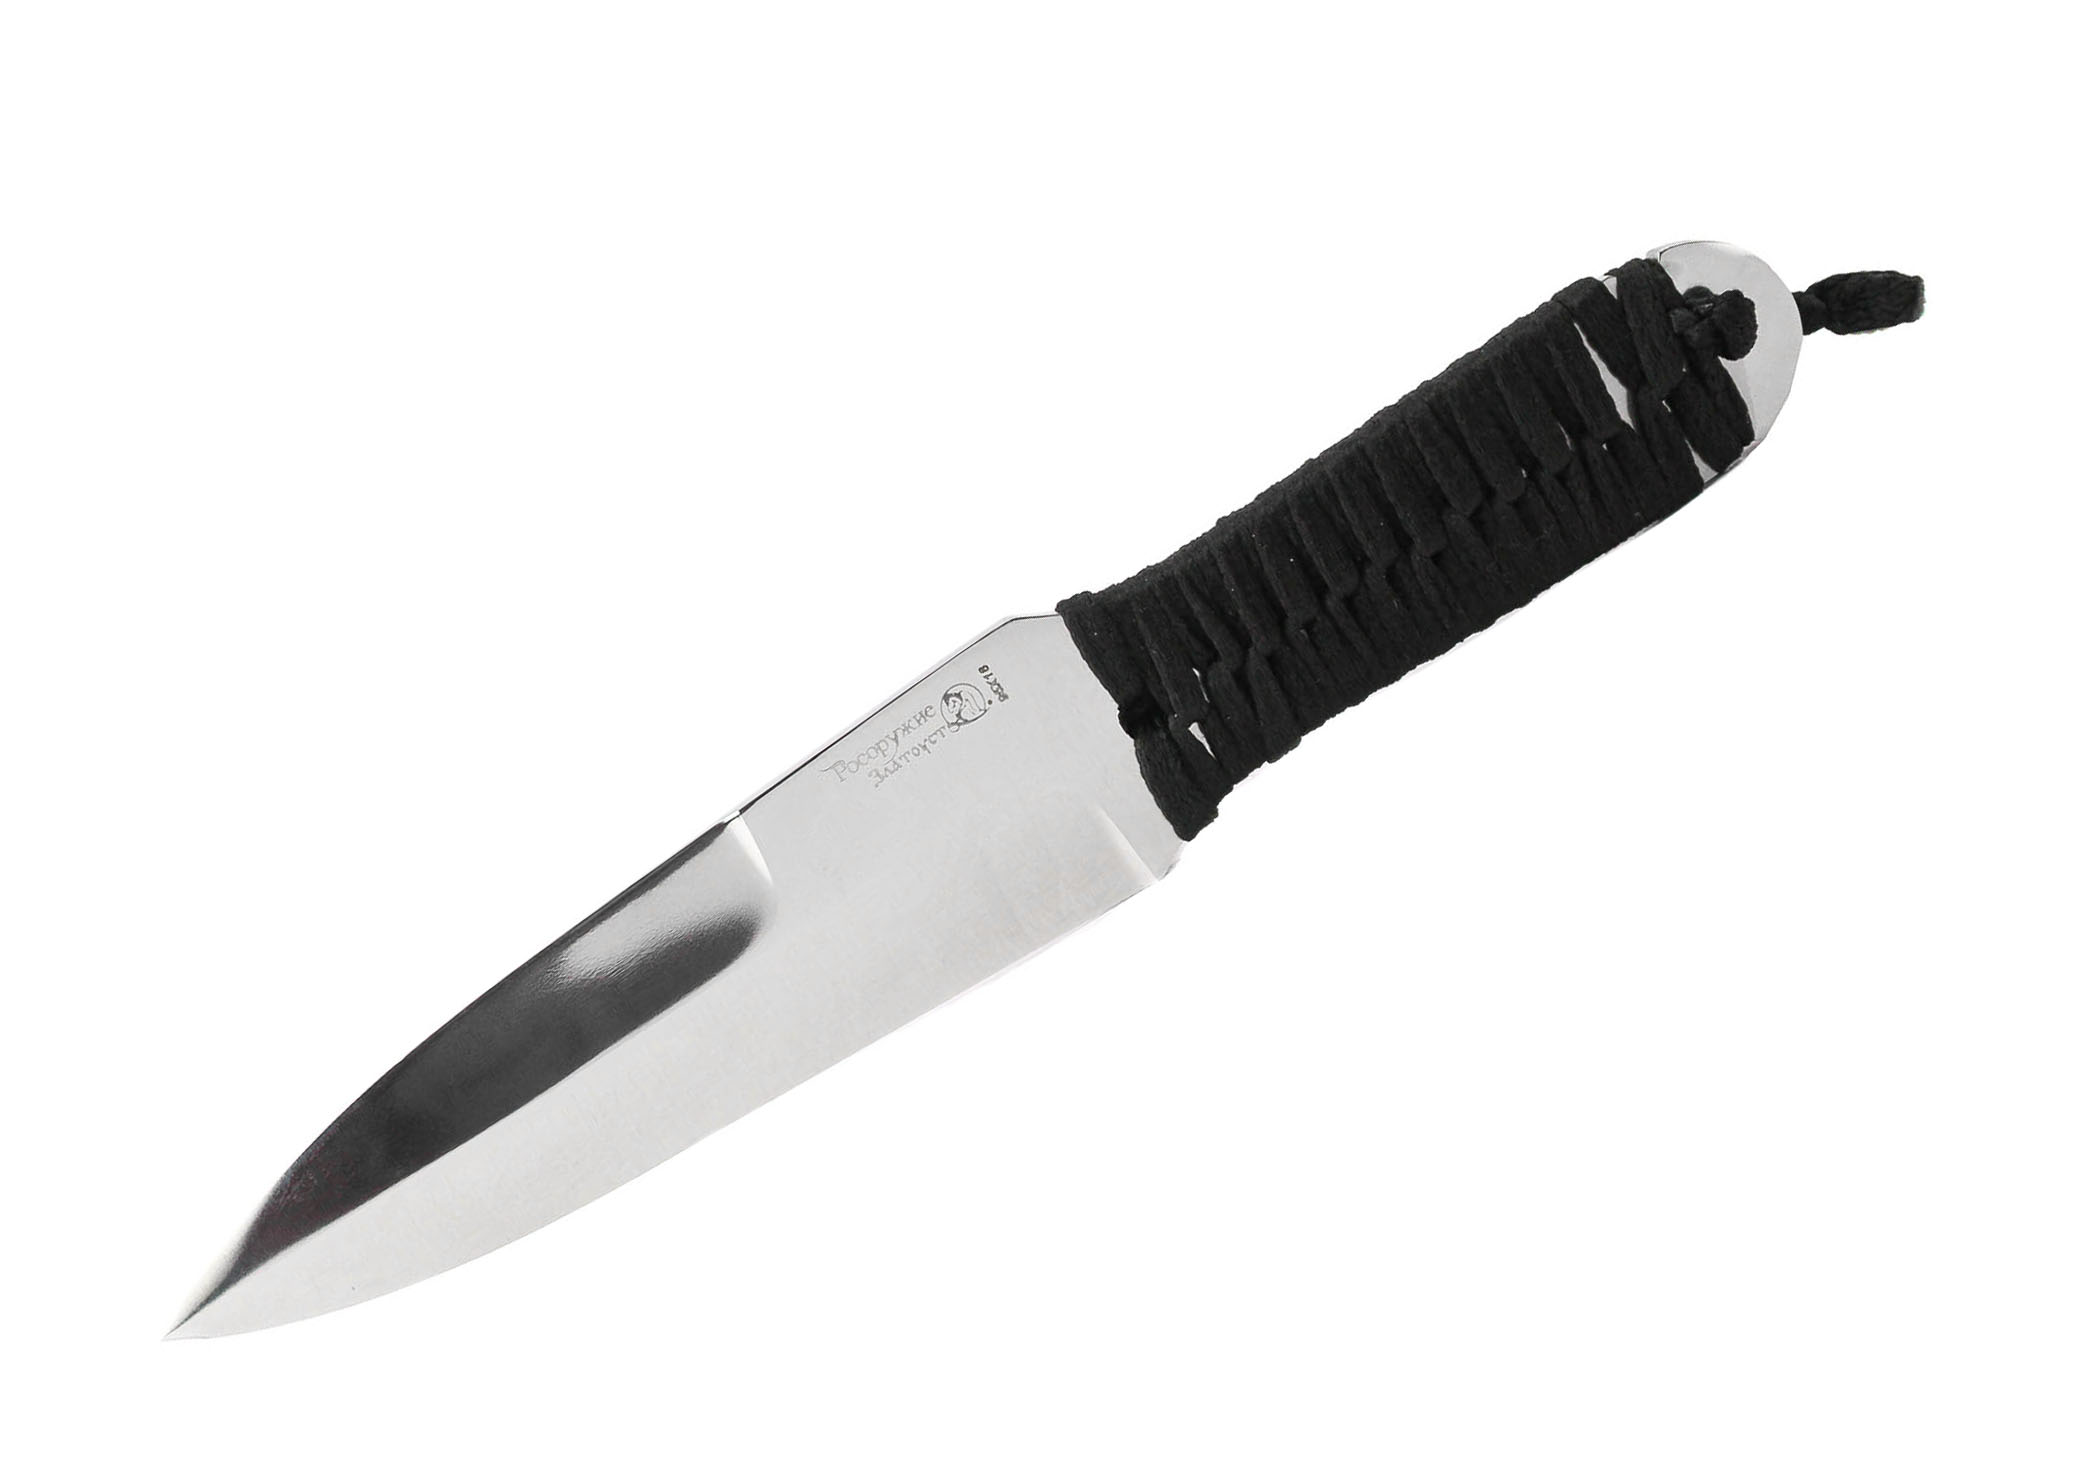 Нож Росоружие Боец-2 сталь 95х18 фиксированный клинок рукоять намотка - фото 1